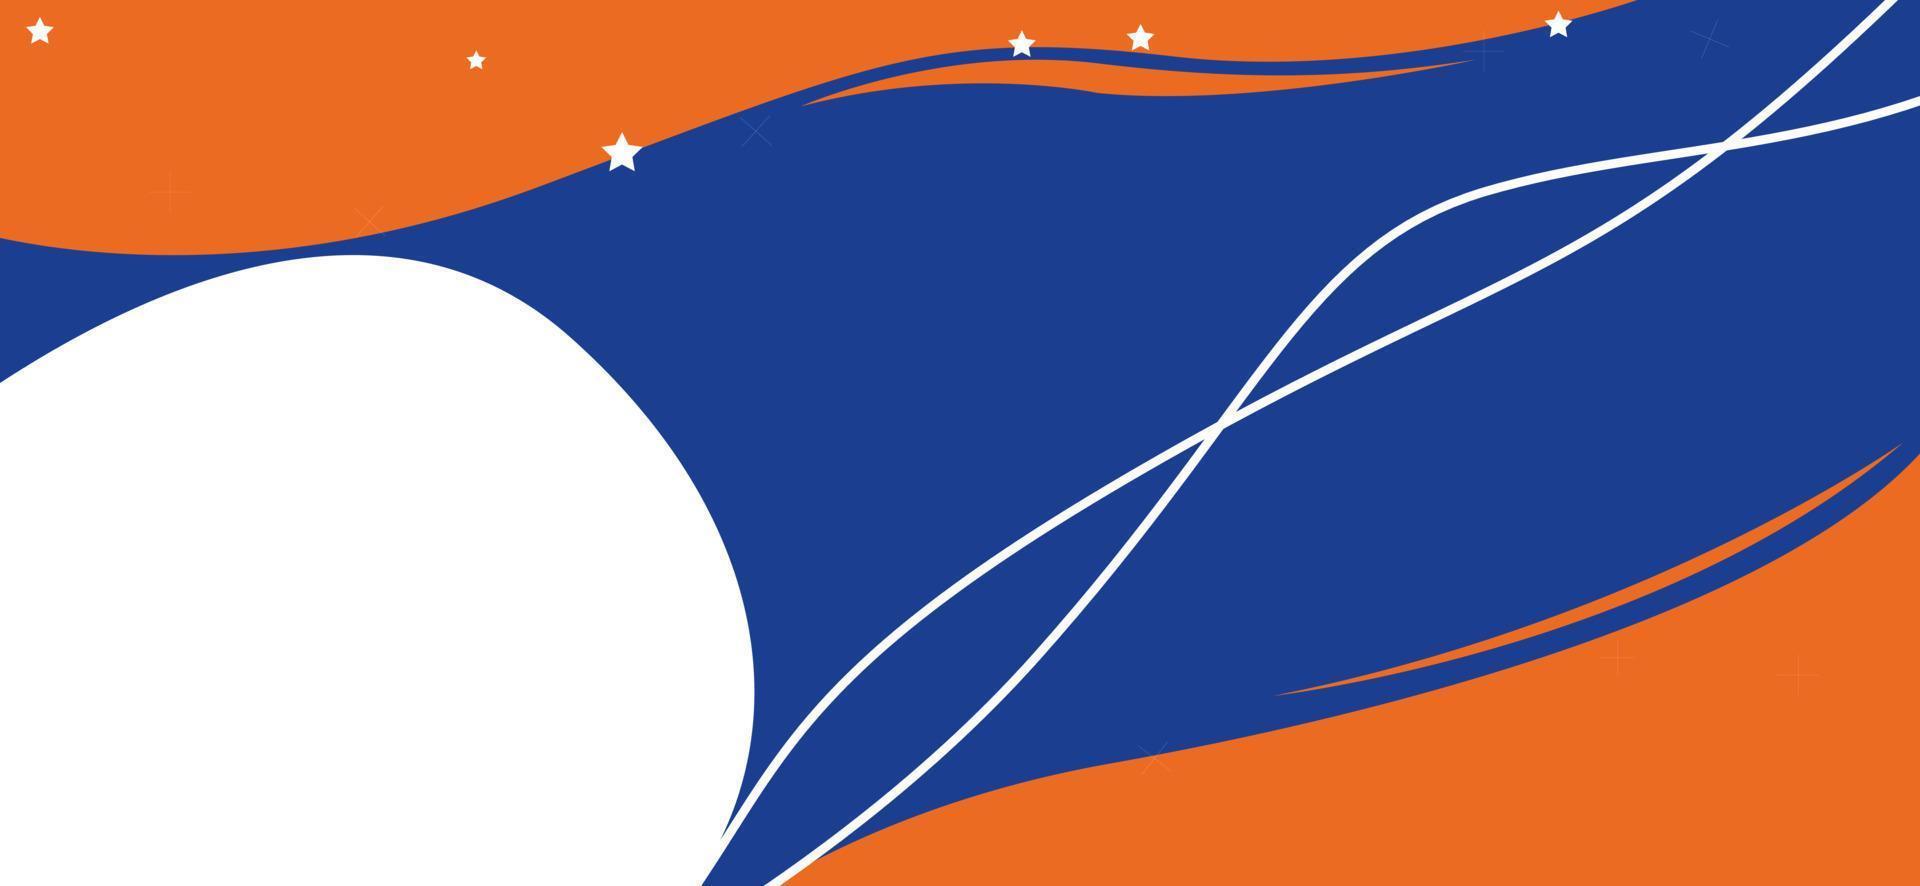 fondo azul oscuro con petern naranja y contorno blanco para mostrar el producto en el sitio web. adecuado para publicidad en redes sociales. vector